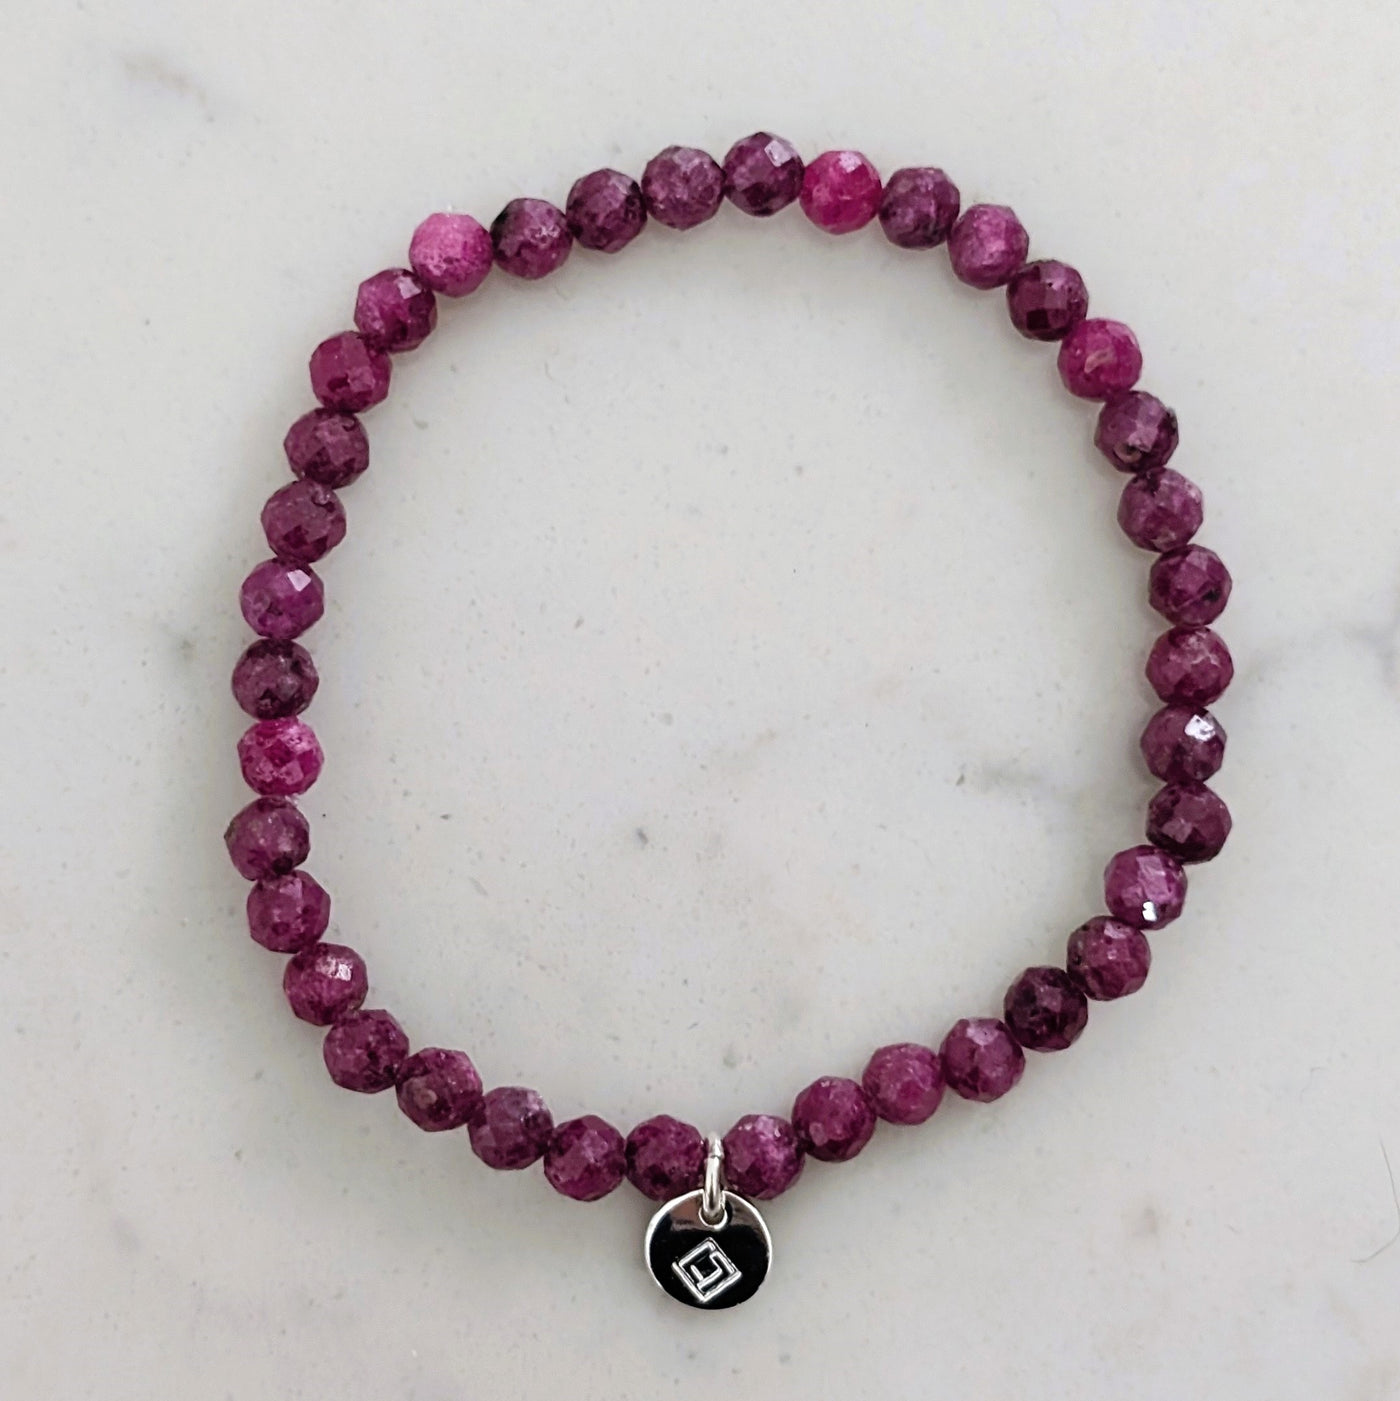 Ruby children's gemstone bracelet